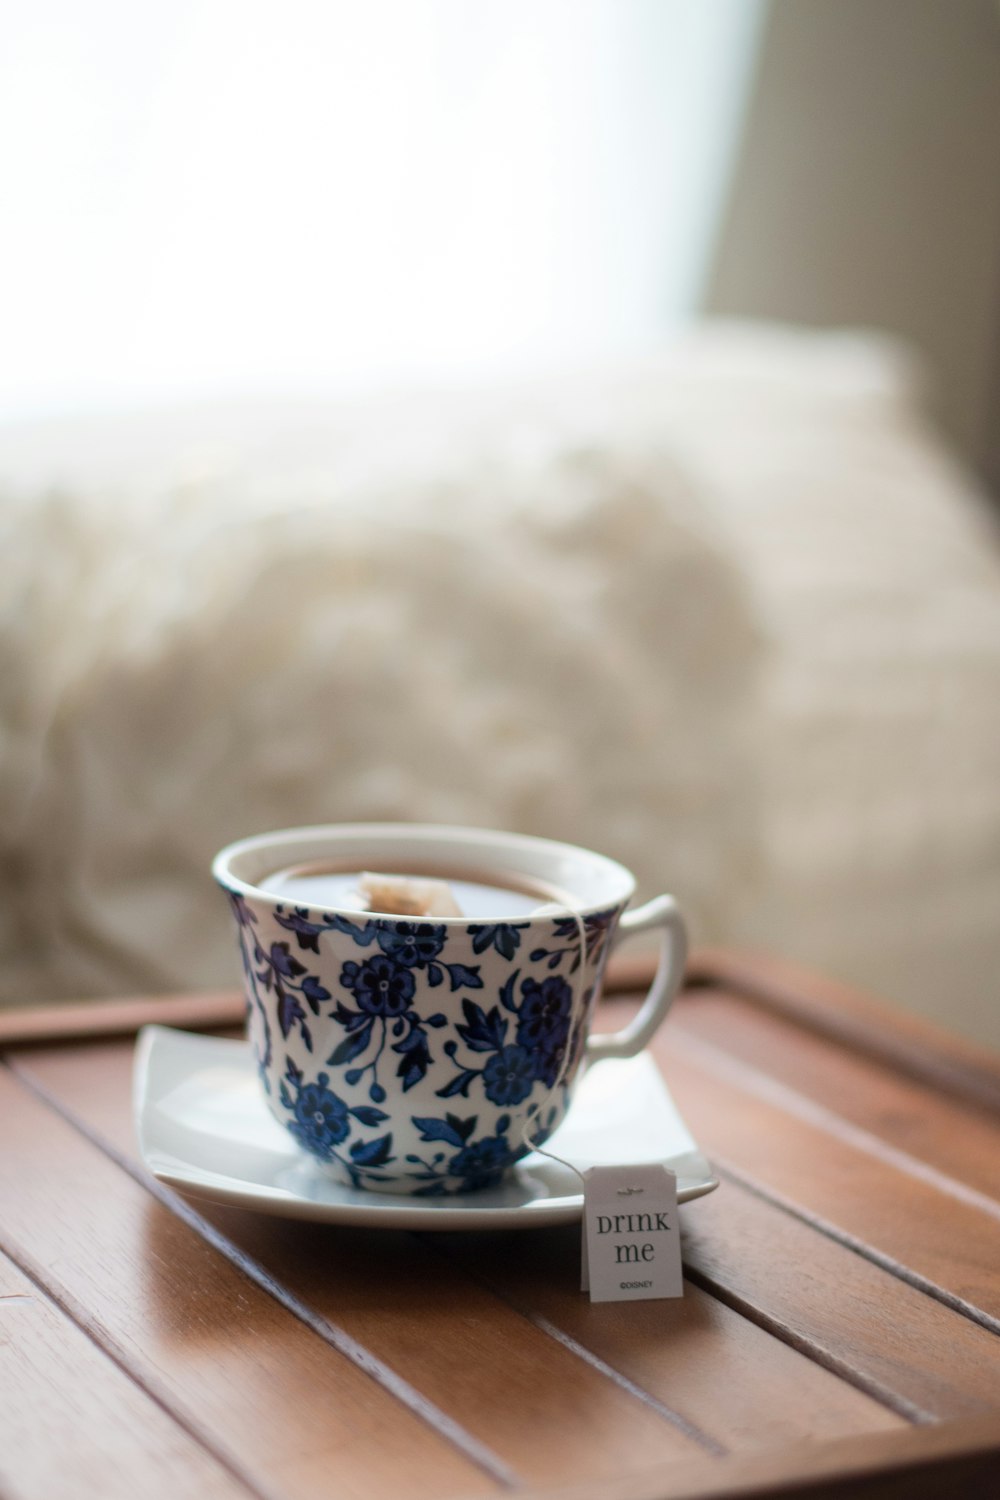 xícara de chá floral branca e azul com saquinho de chá no pires na fotografia tilt shift